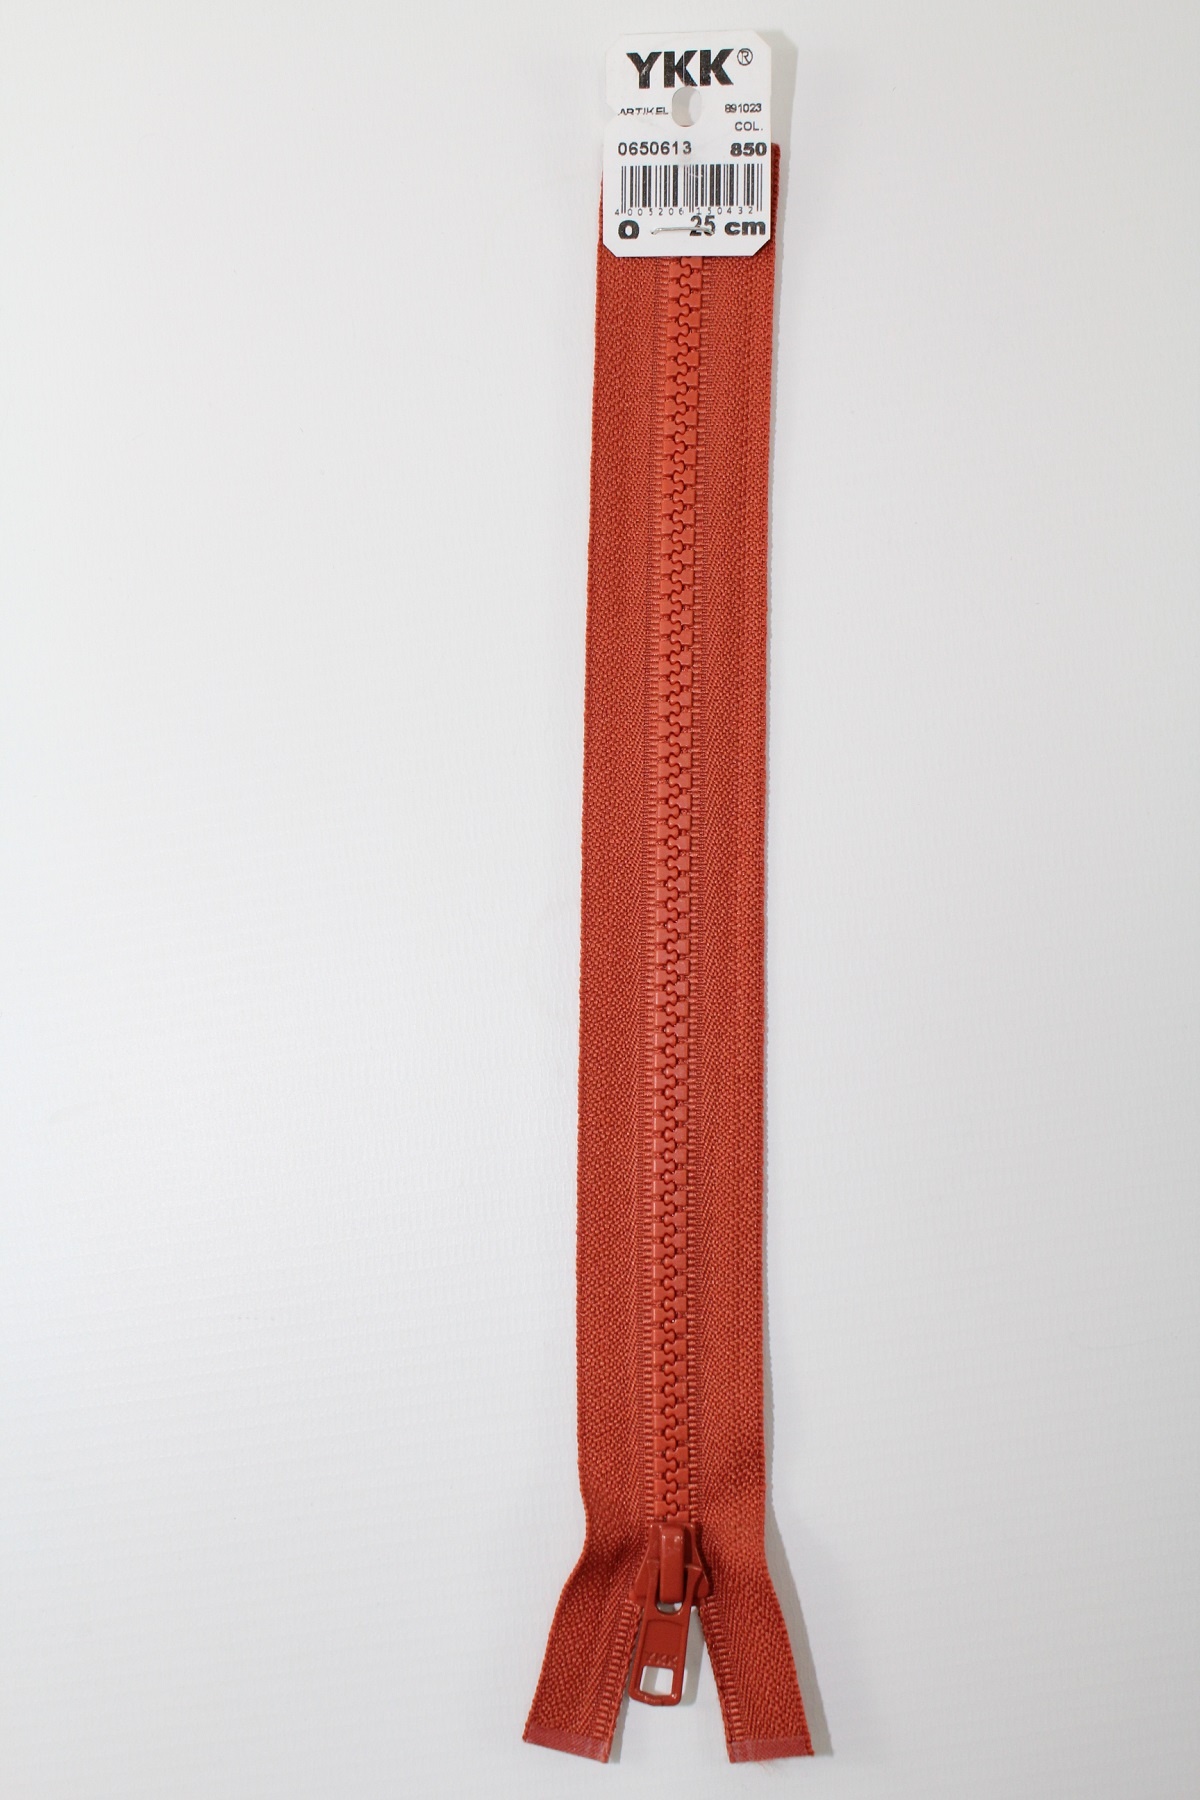 YKK - Reissverschlüsse 25 cm - 80 cm, teilbar, rost